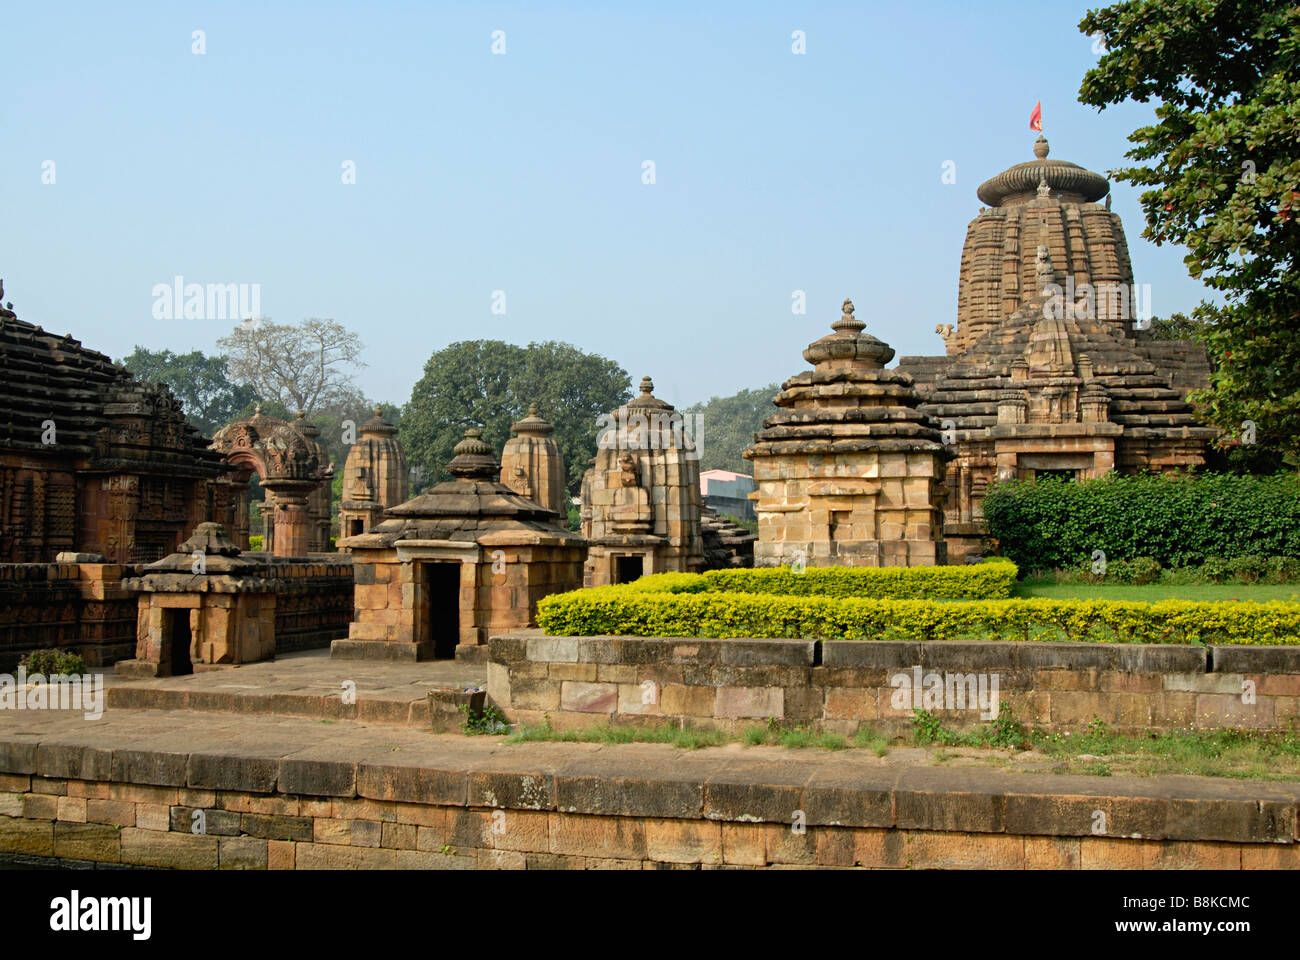 Muktesvara-Tempel-Komplex zeigt Gruppe von Tempeln, Siddheshwar Tempel in der extremen Rechten. Blick von Osten. Orissa, Indien. Stockfoto